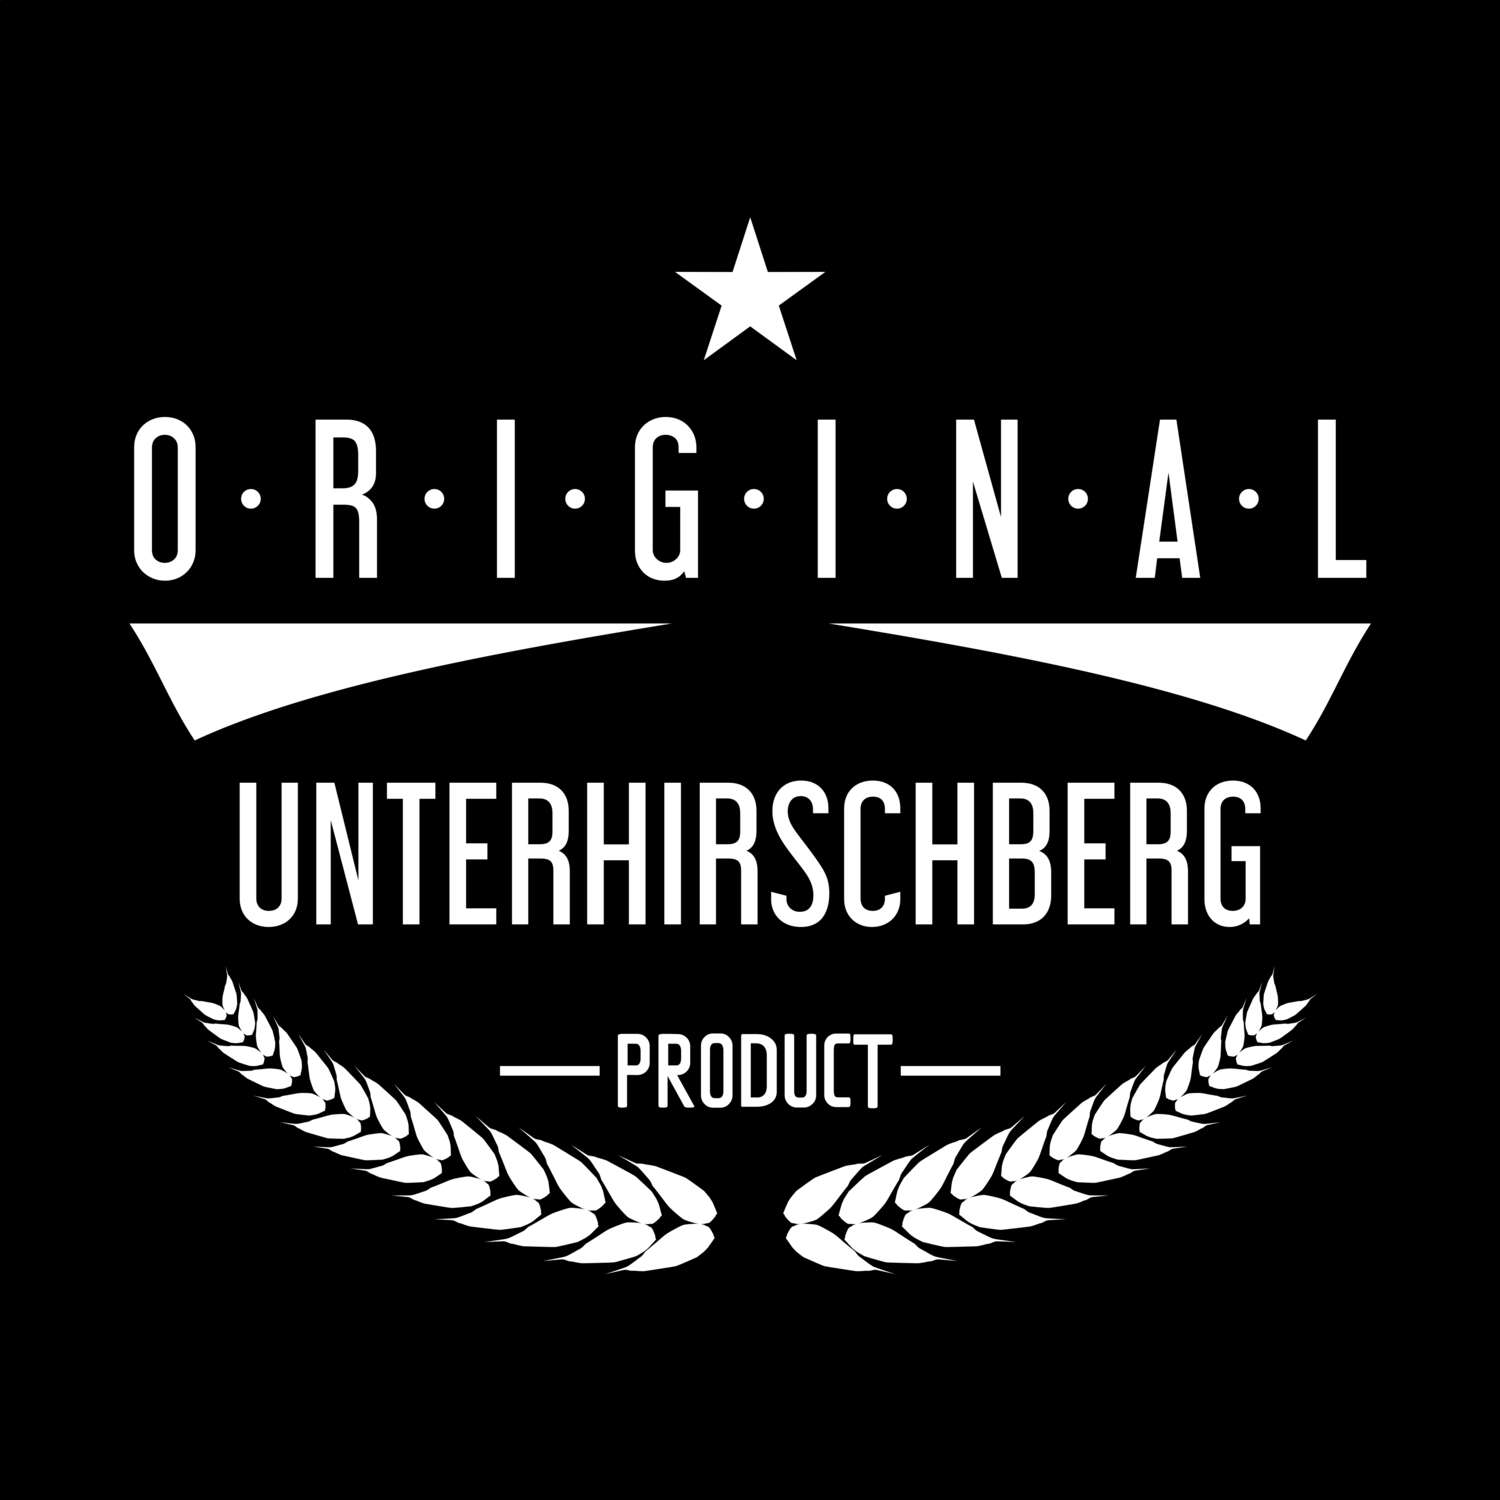 Unterhirschberg T-Shirt »Original Product«